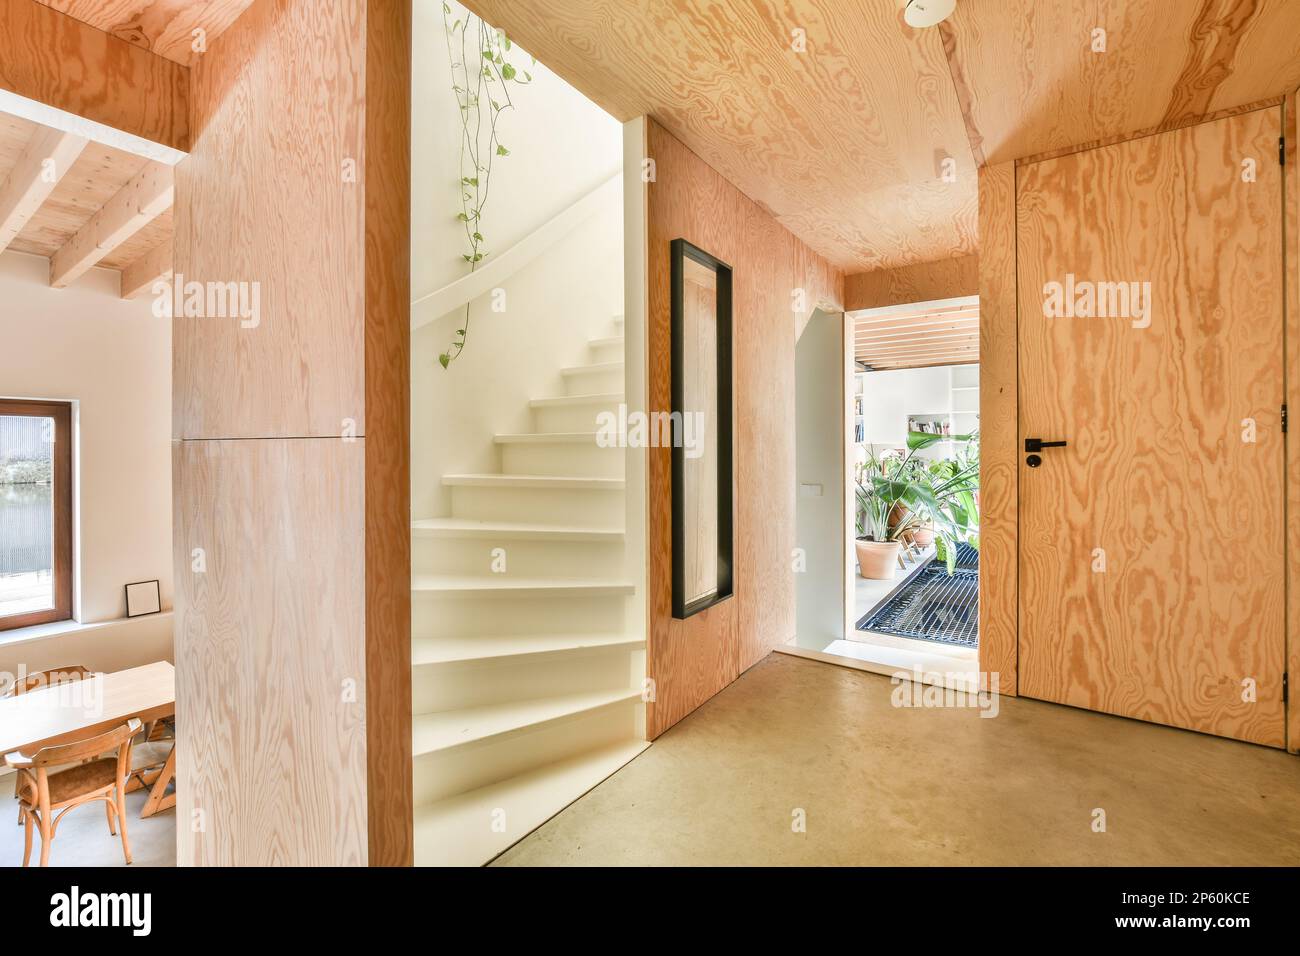 l'intérieur d'une maison qui est faite de bois de plywood et a été utilisé comme bureau Banque D'Images